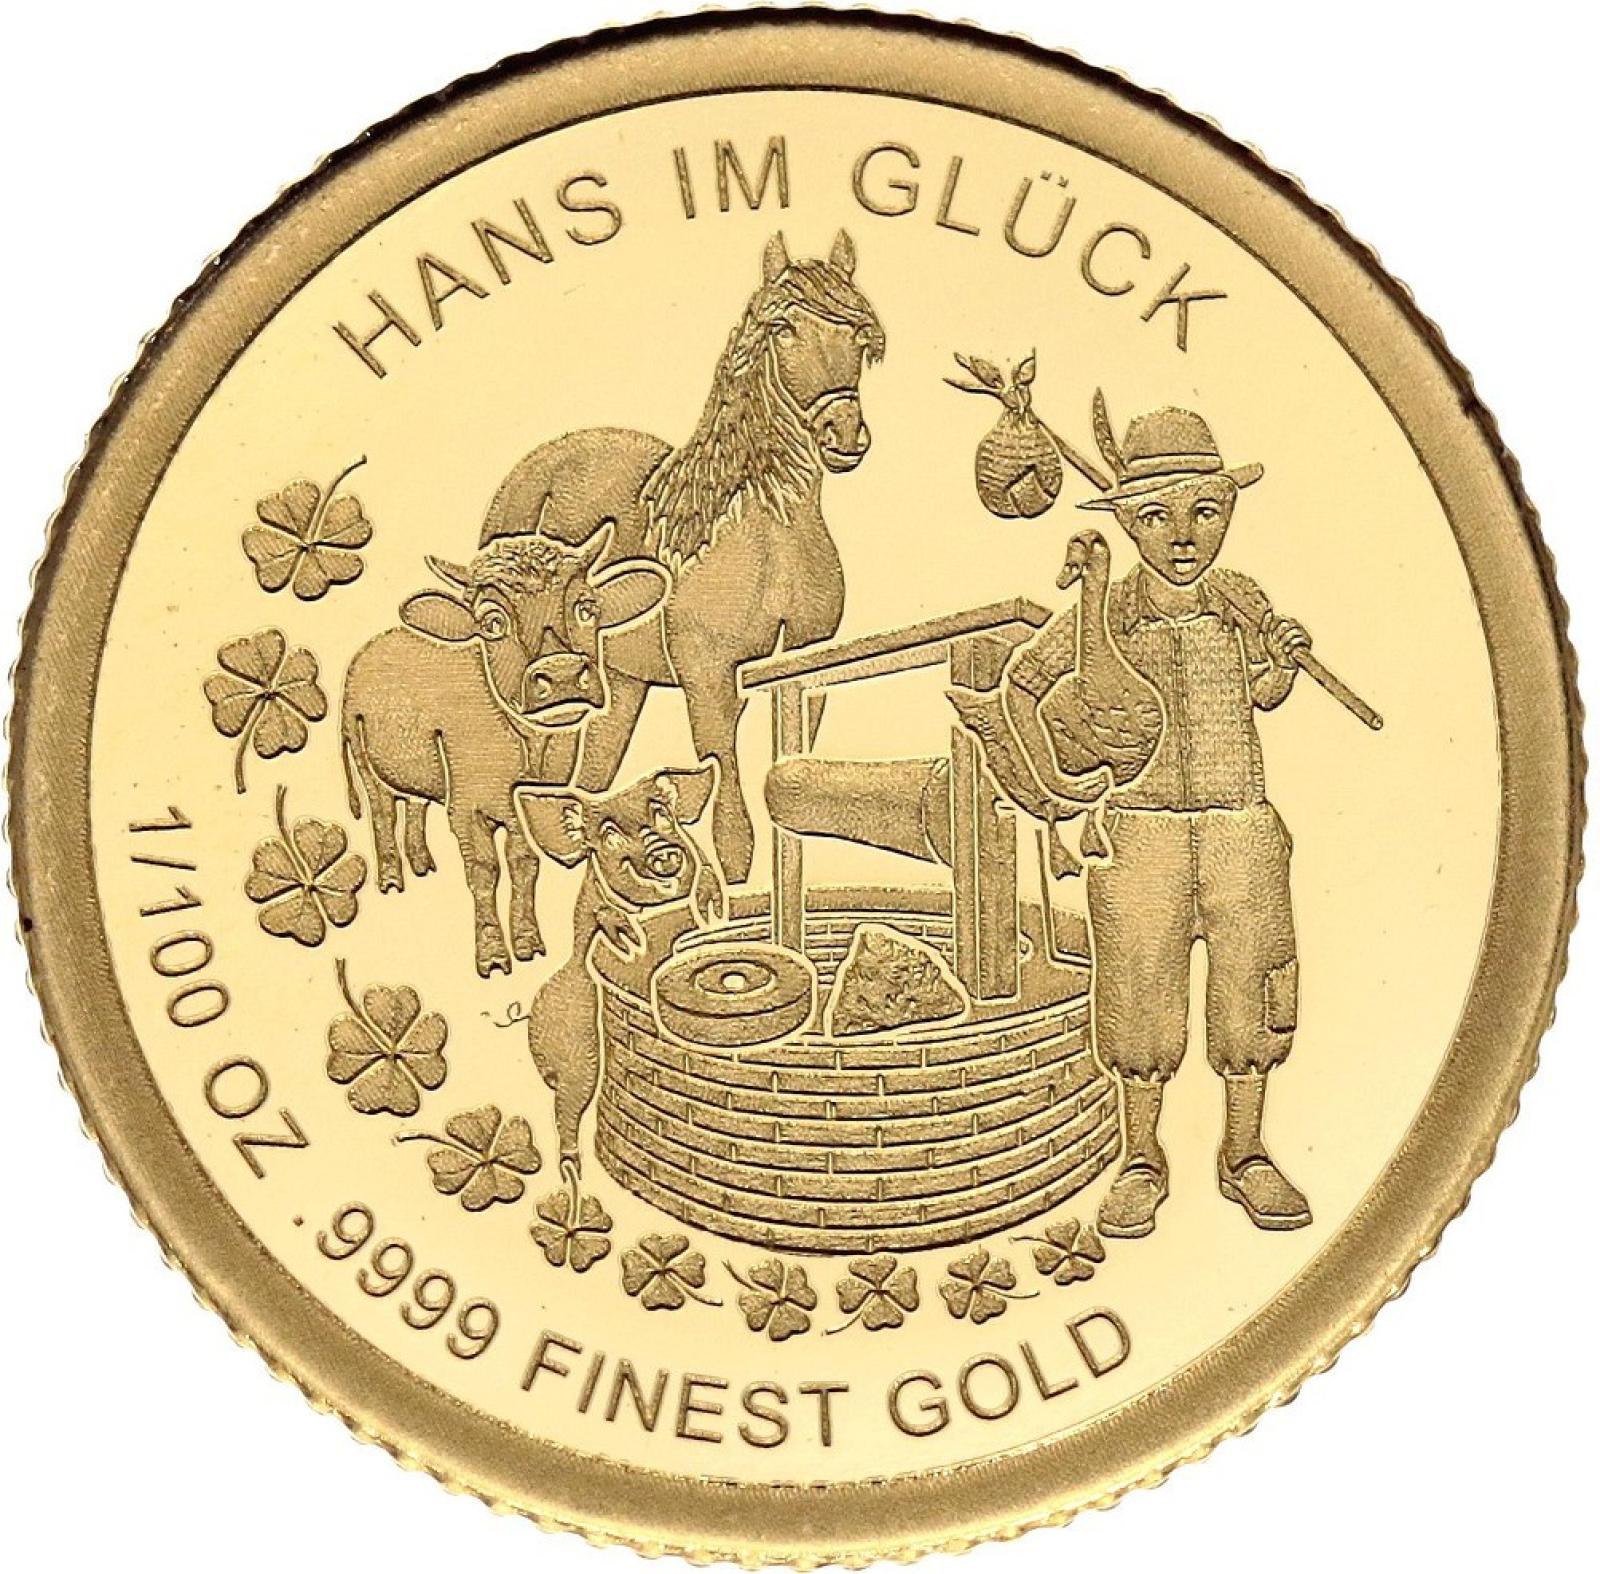 2020 Malá zlatá minca Burundi 50 Francs Hans In Gluck